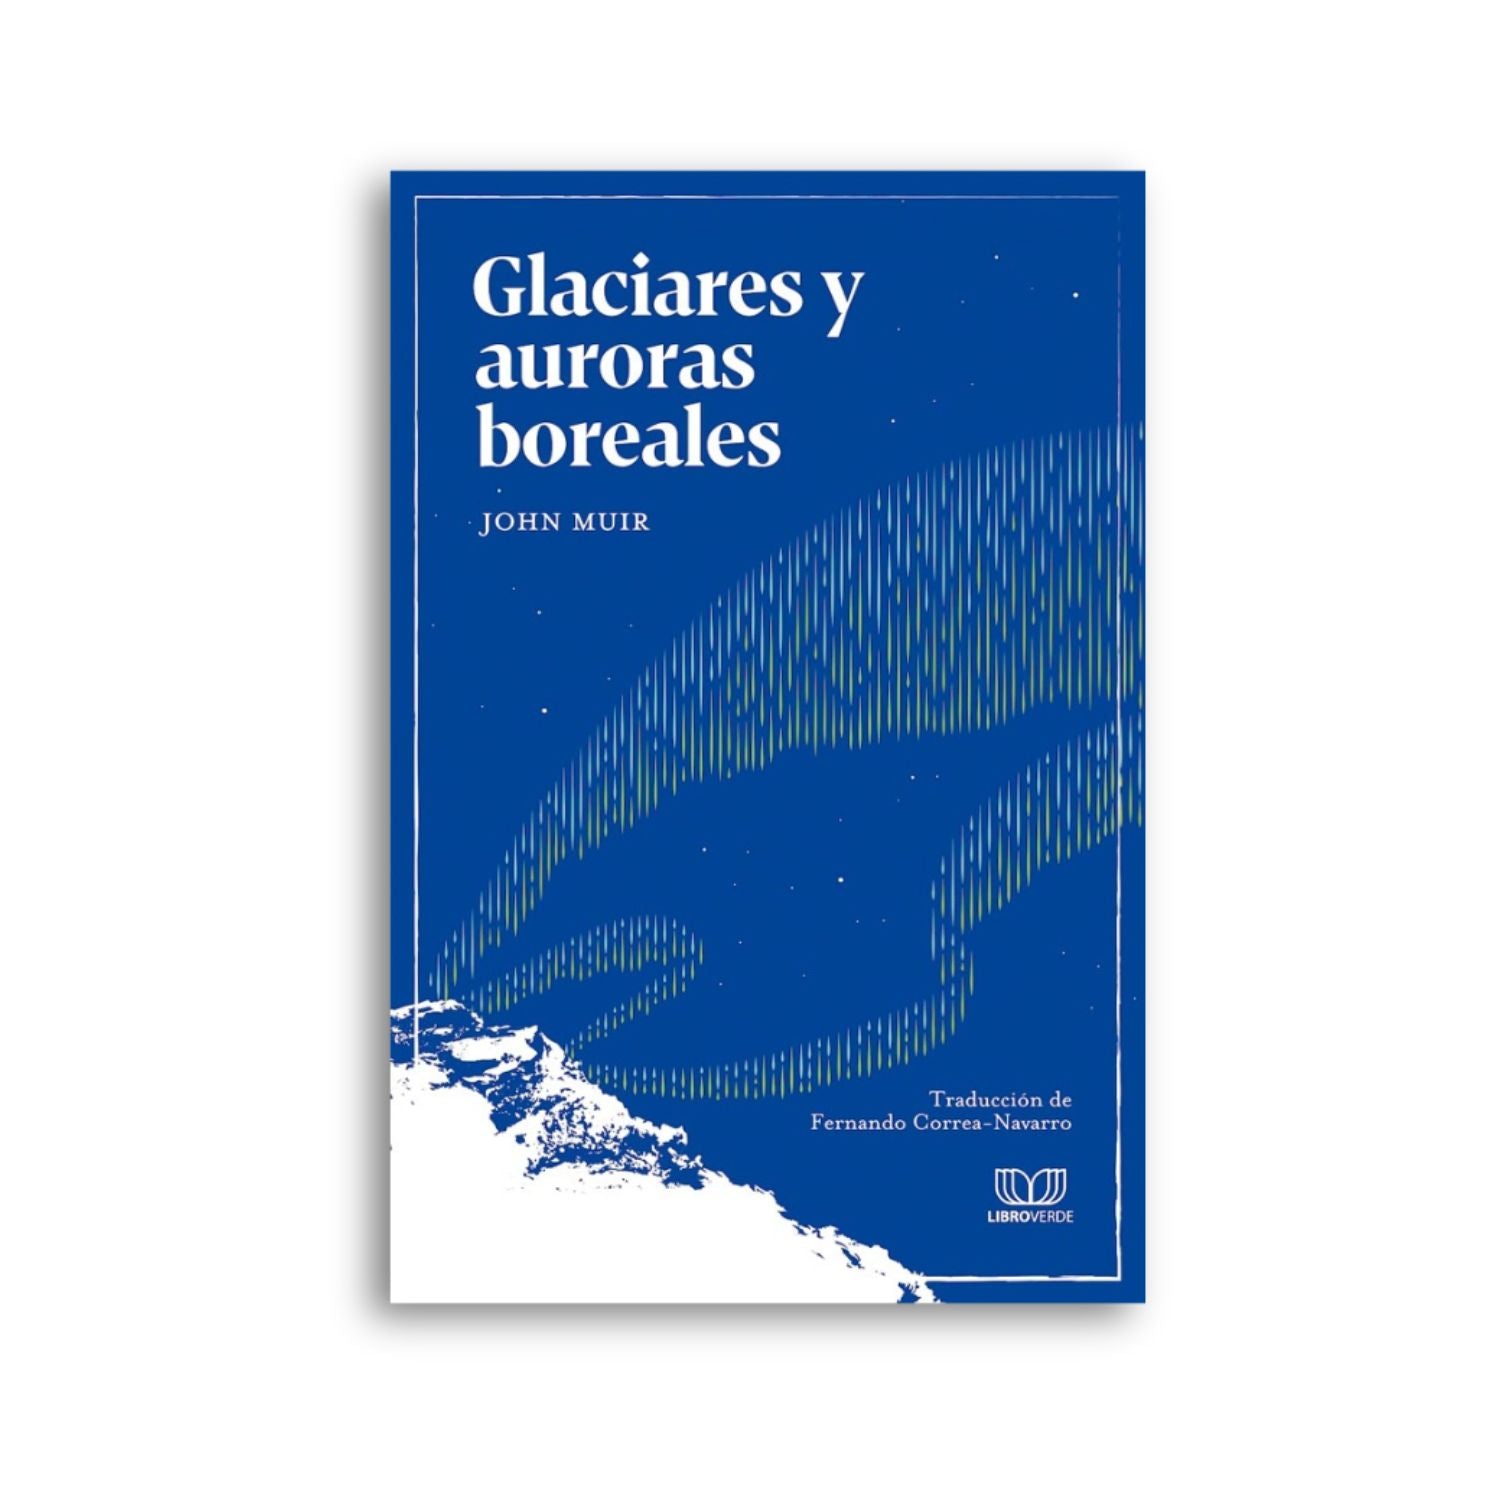 Glaciares y auroras boreales